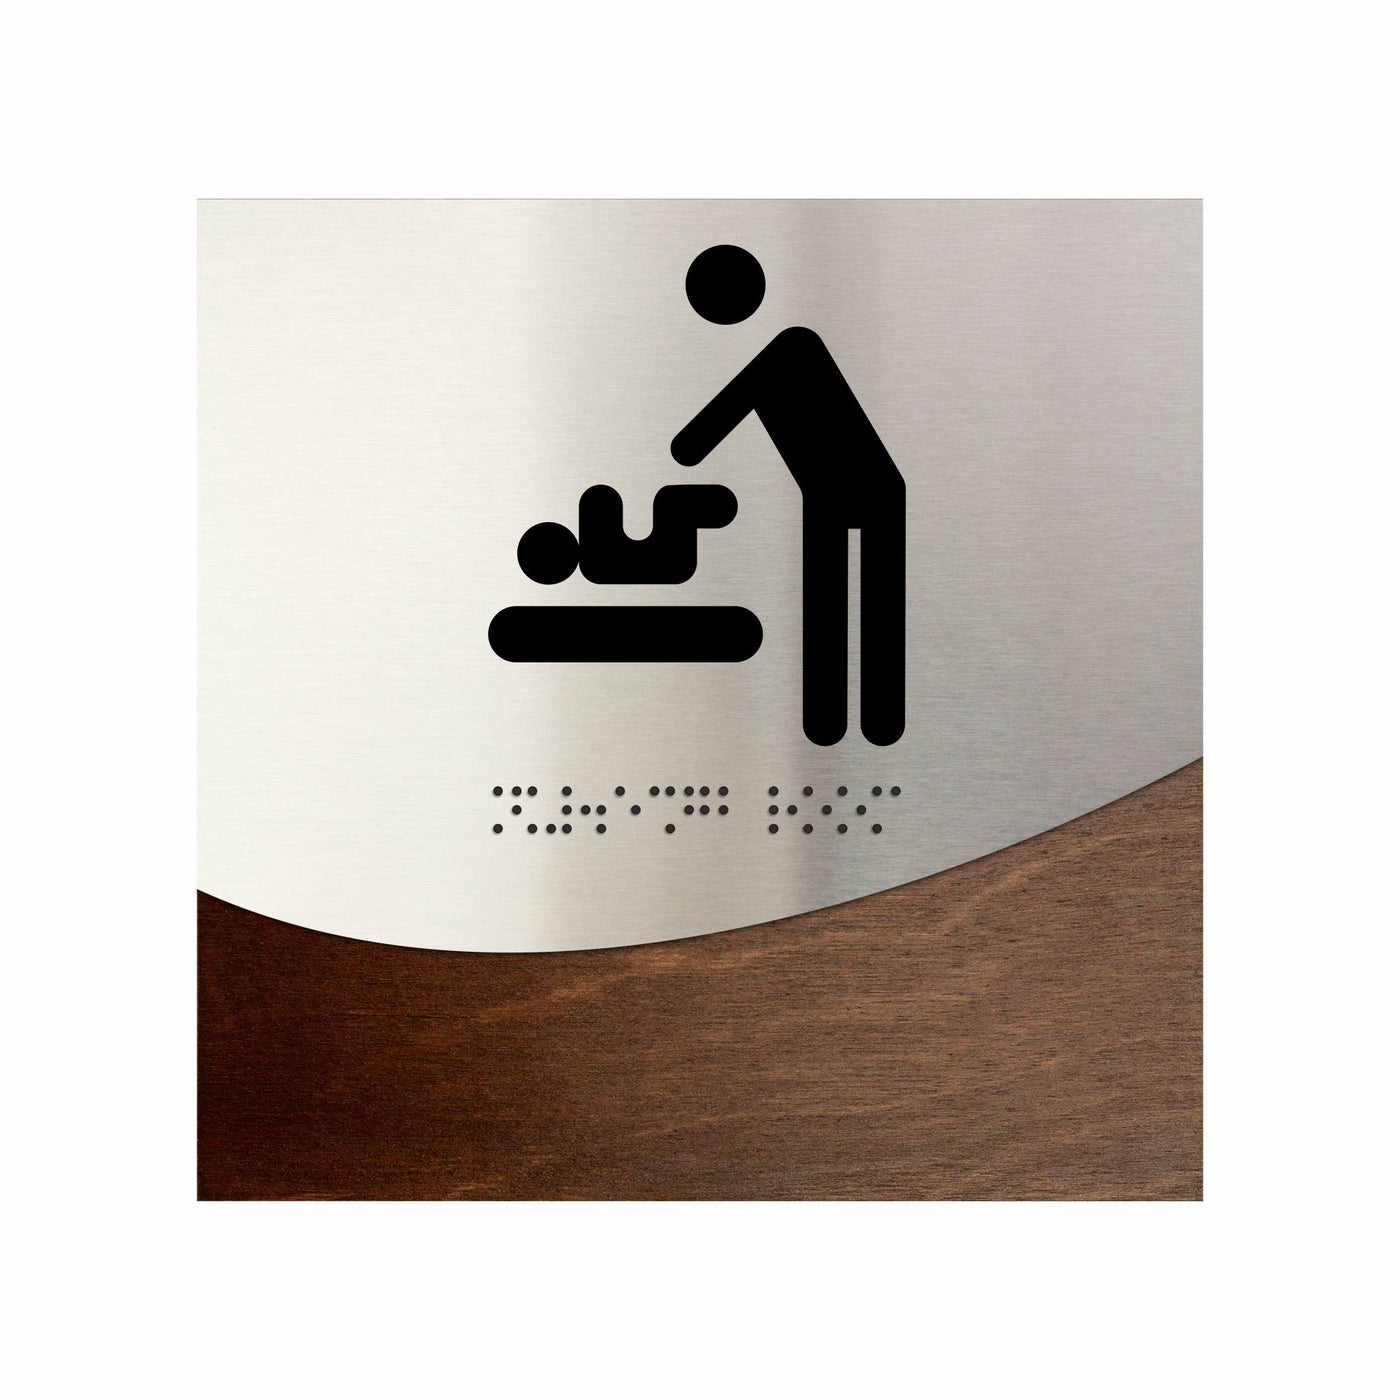 Baby Change Room Signage for Mother "Jure" Design